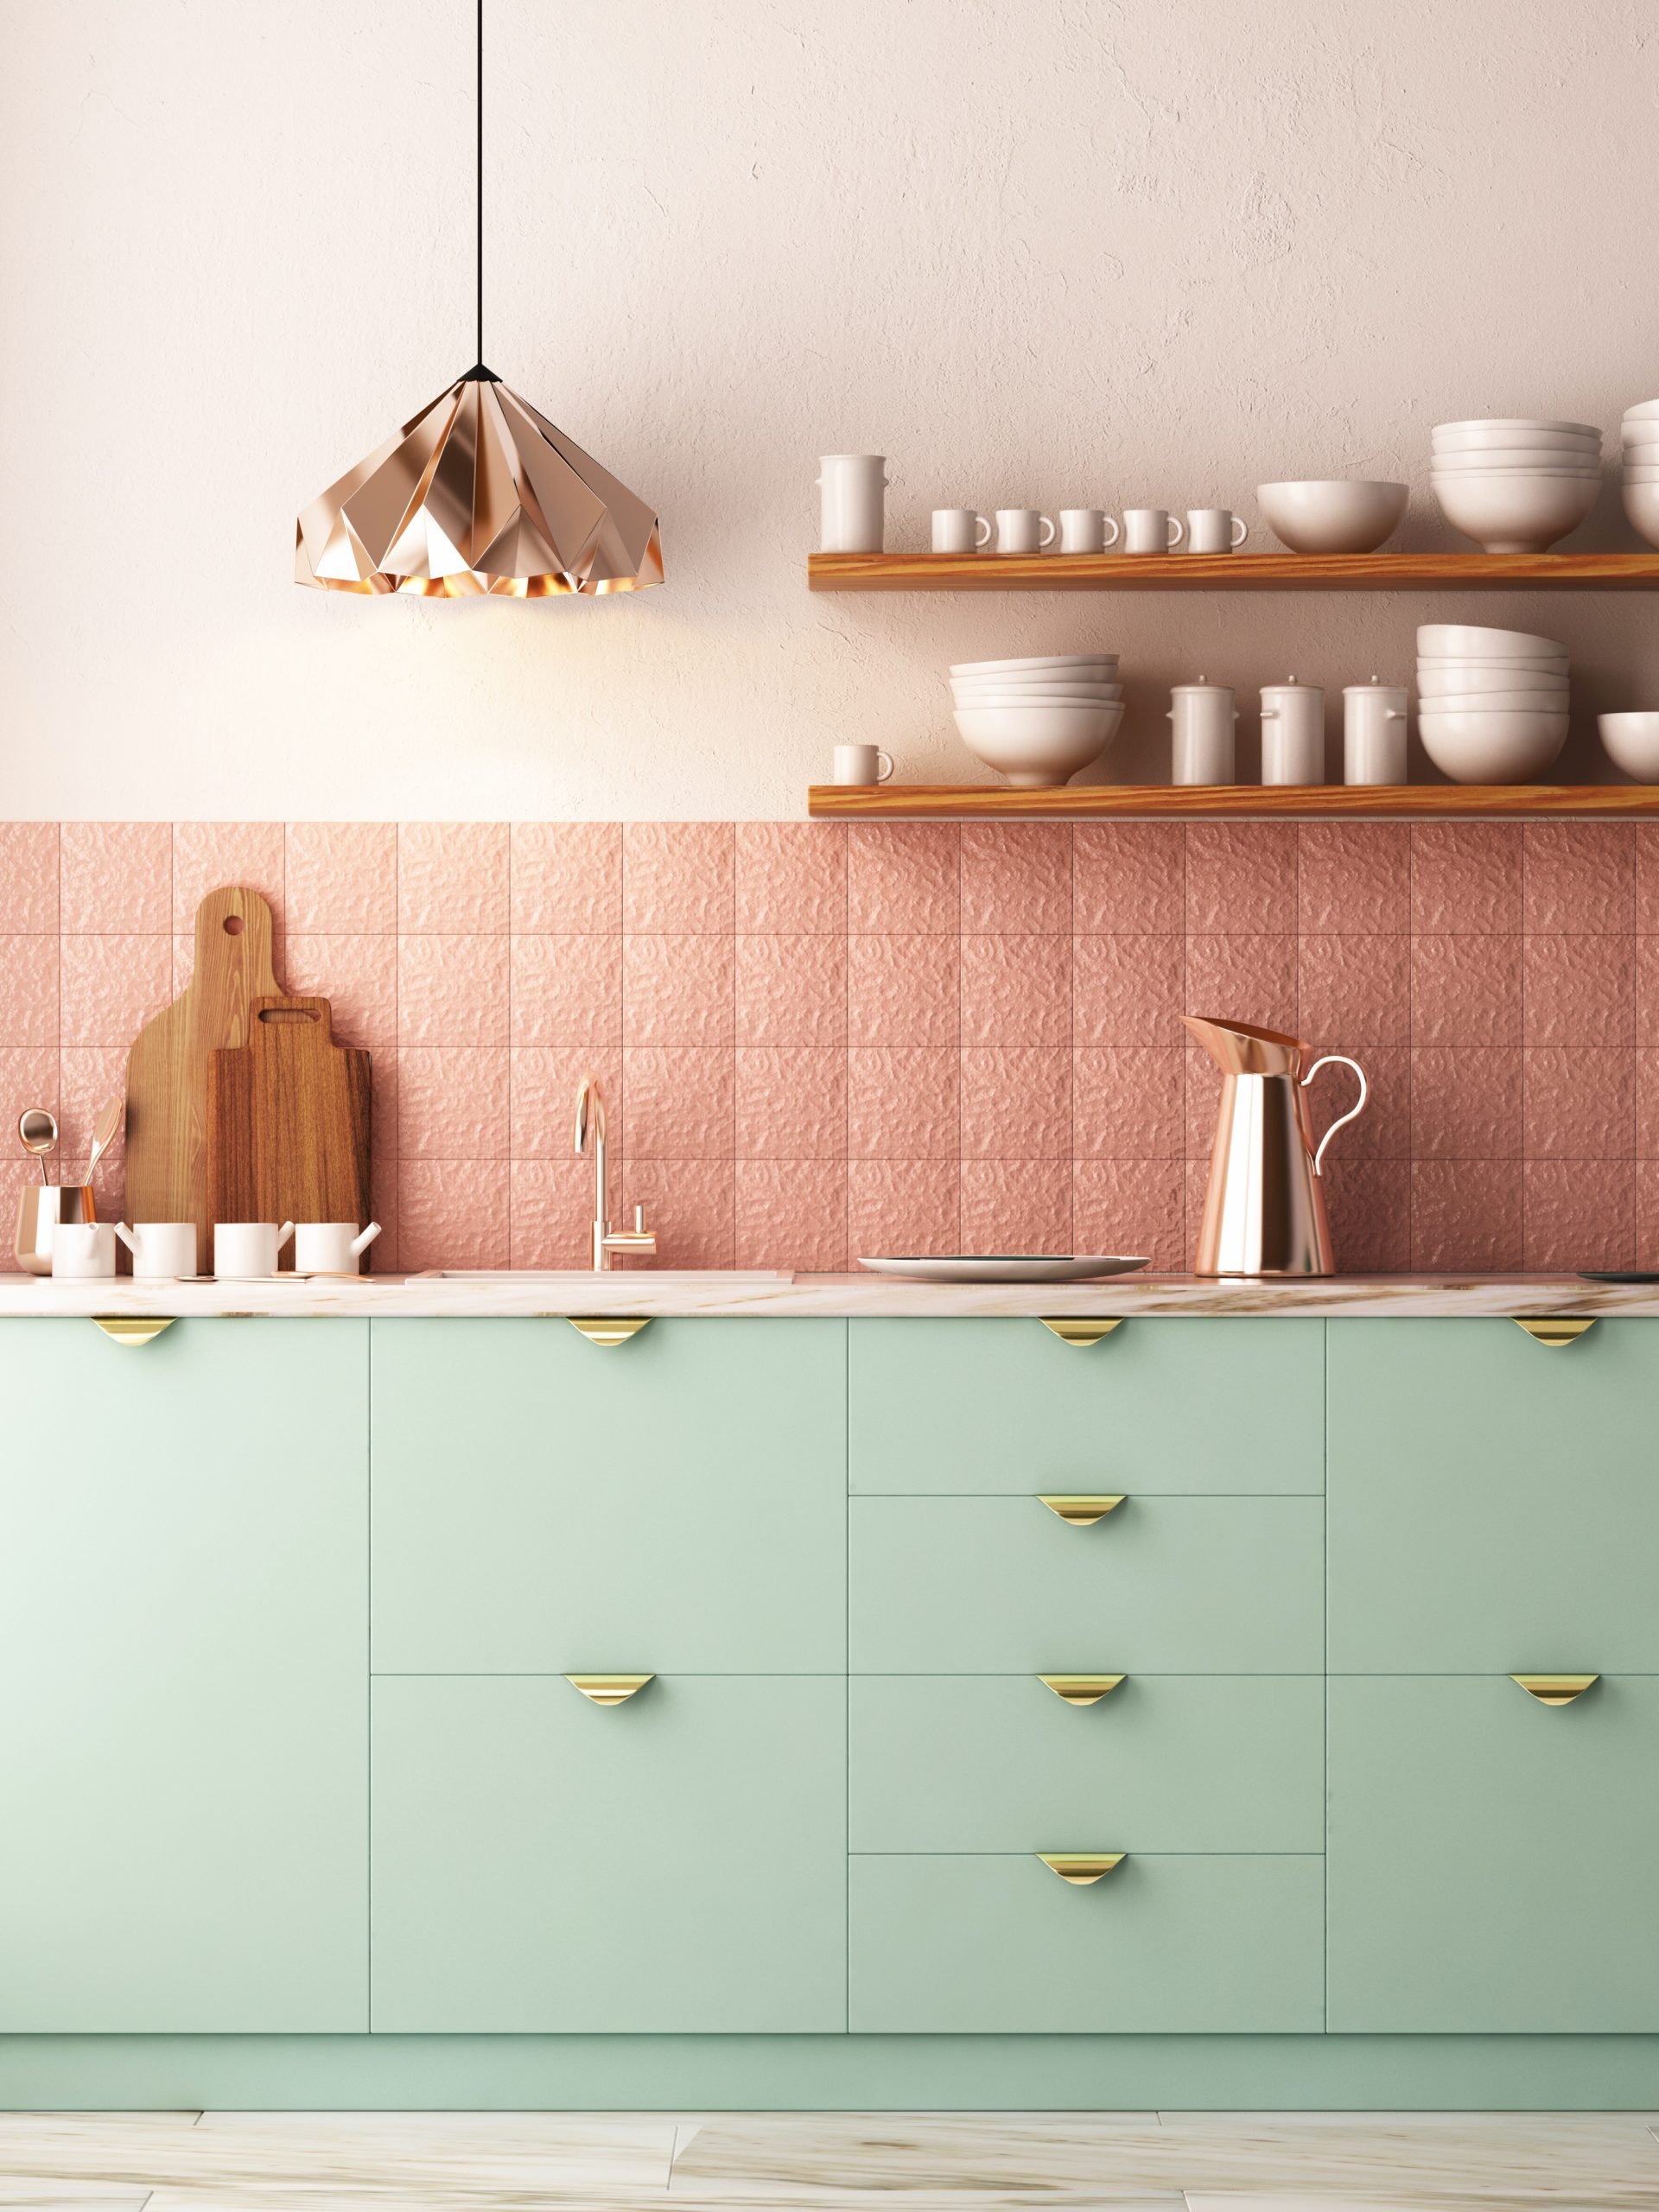 Khi kết hợp cả 2 gam màu trên vào cùng một không gian thì chúng ta sẽ có một căn bếp đẹp như mơ thế này! Màu hồng phấn cho sơn tường, màu xanh mint cho tủ bếp, phân cách nhau bởi những viên gạch hồng san hô làm điểm nhấn cho backsplash.